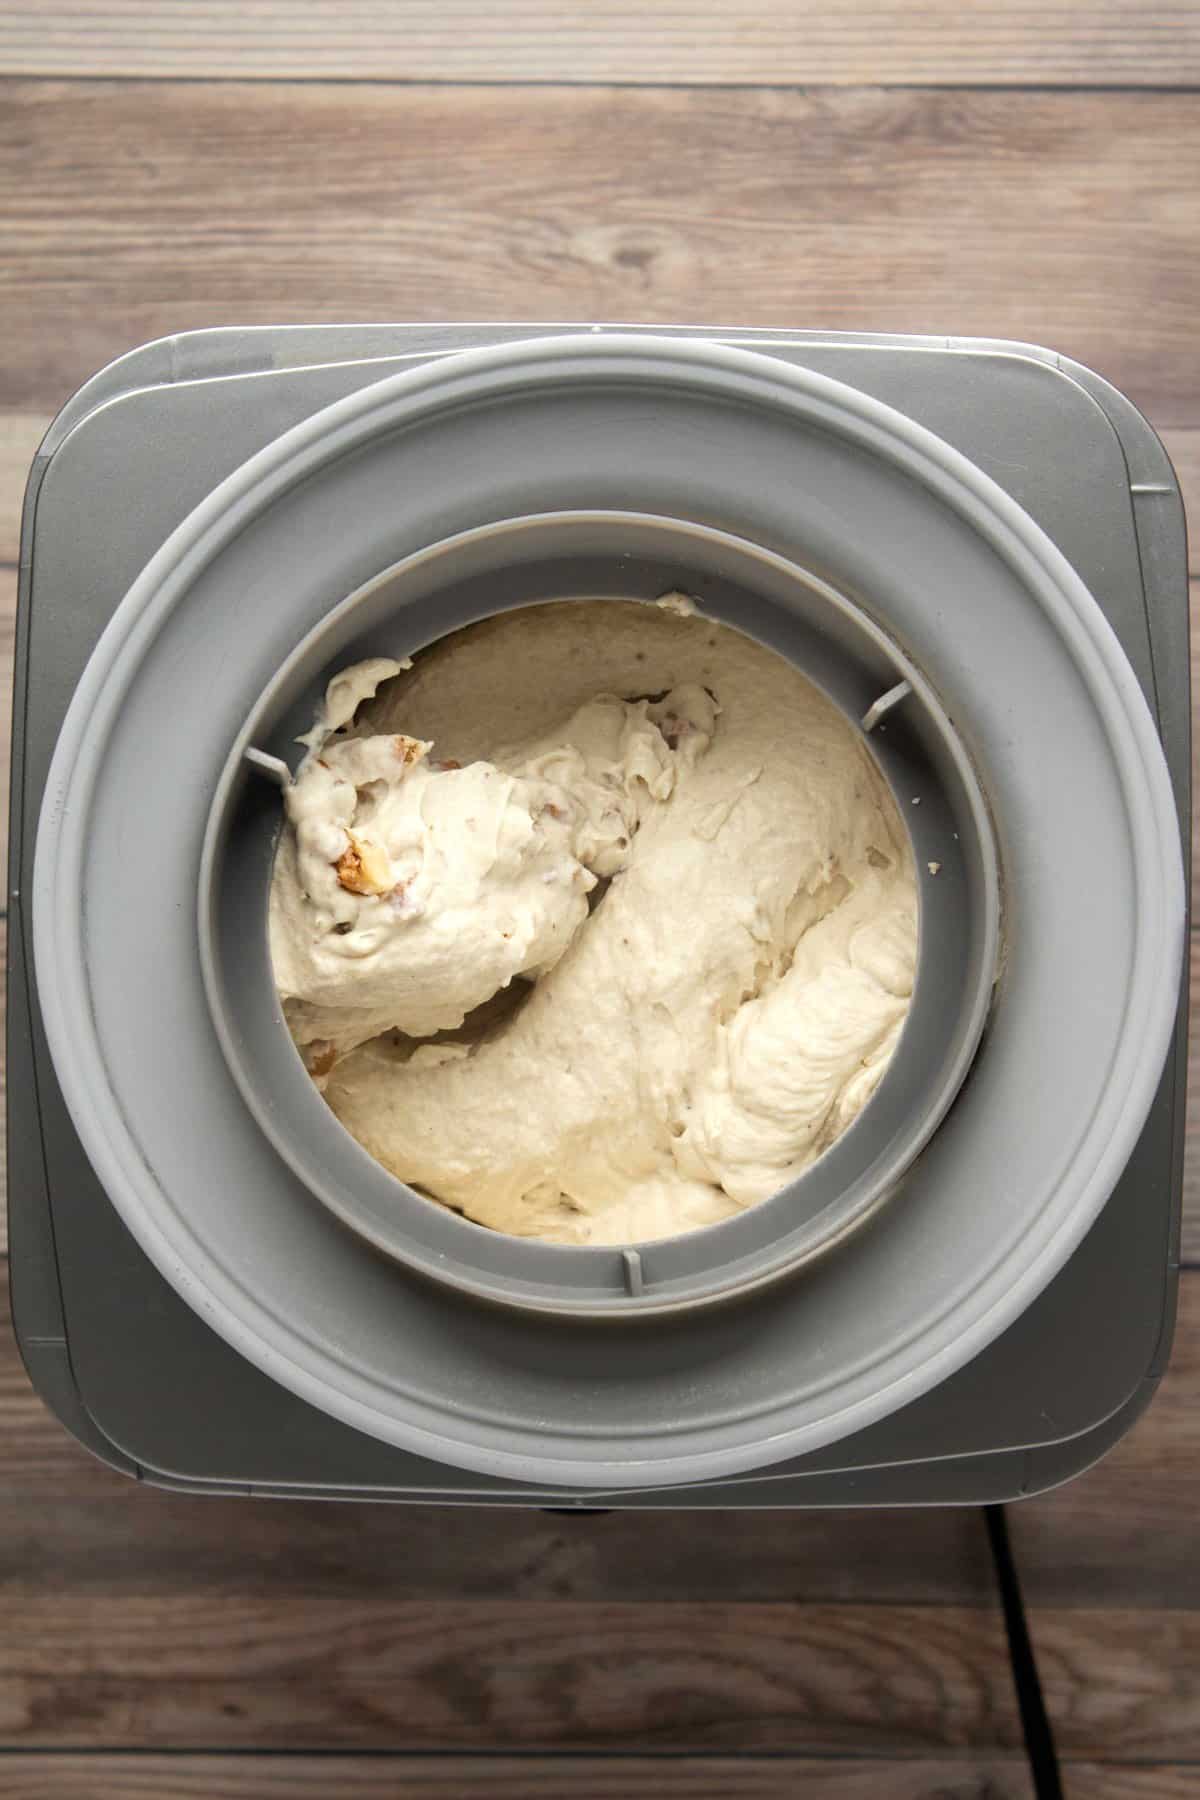 Churning banana ice cream in an ice cream machine.